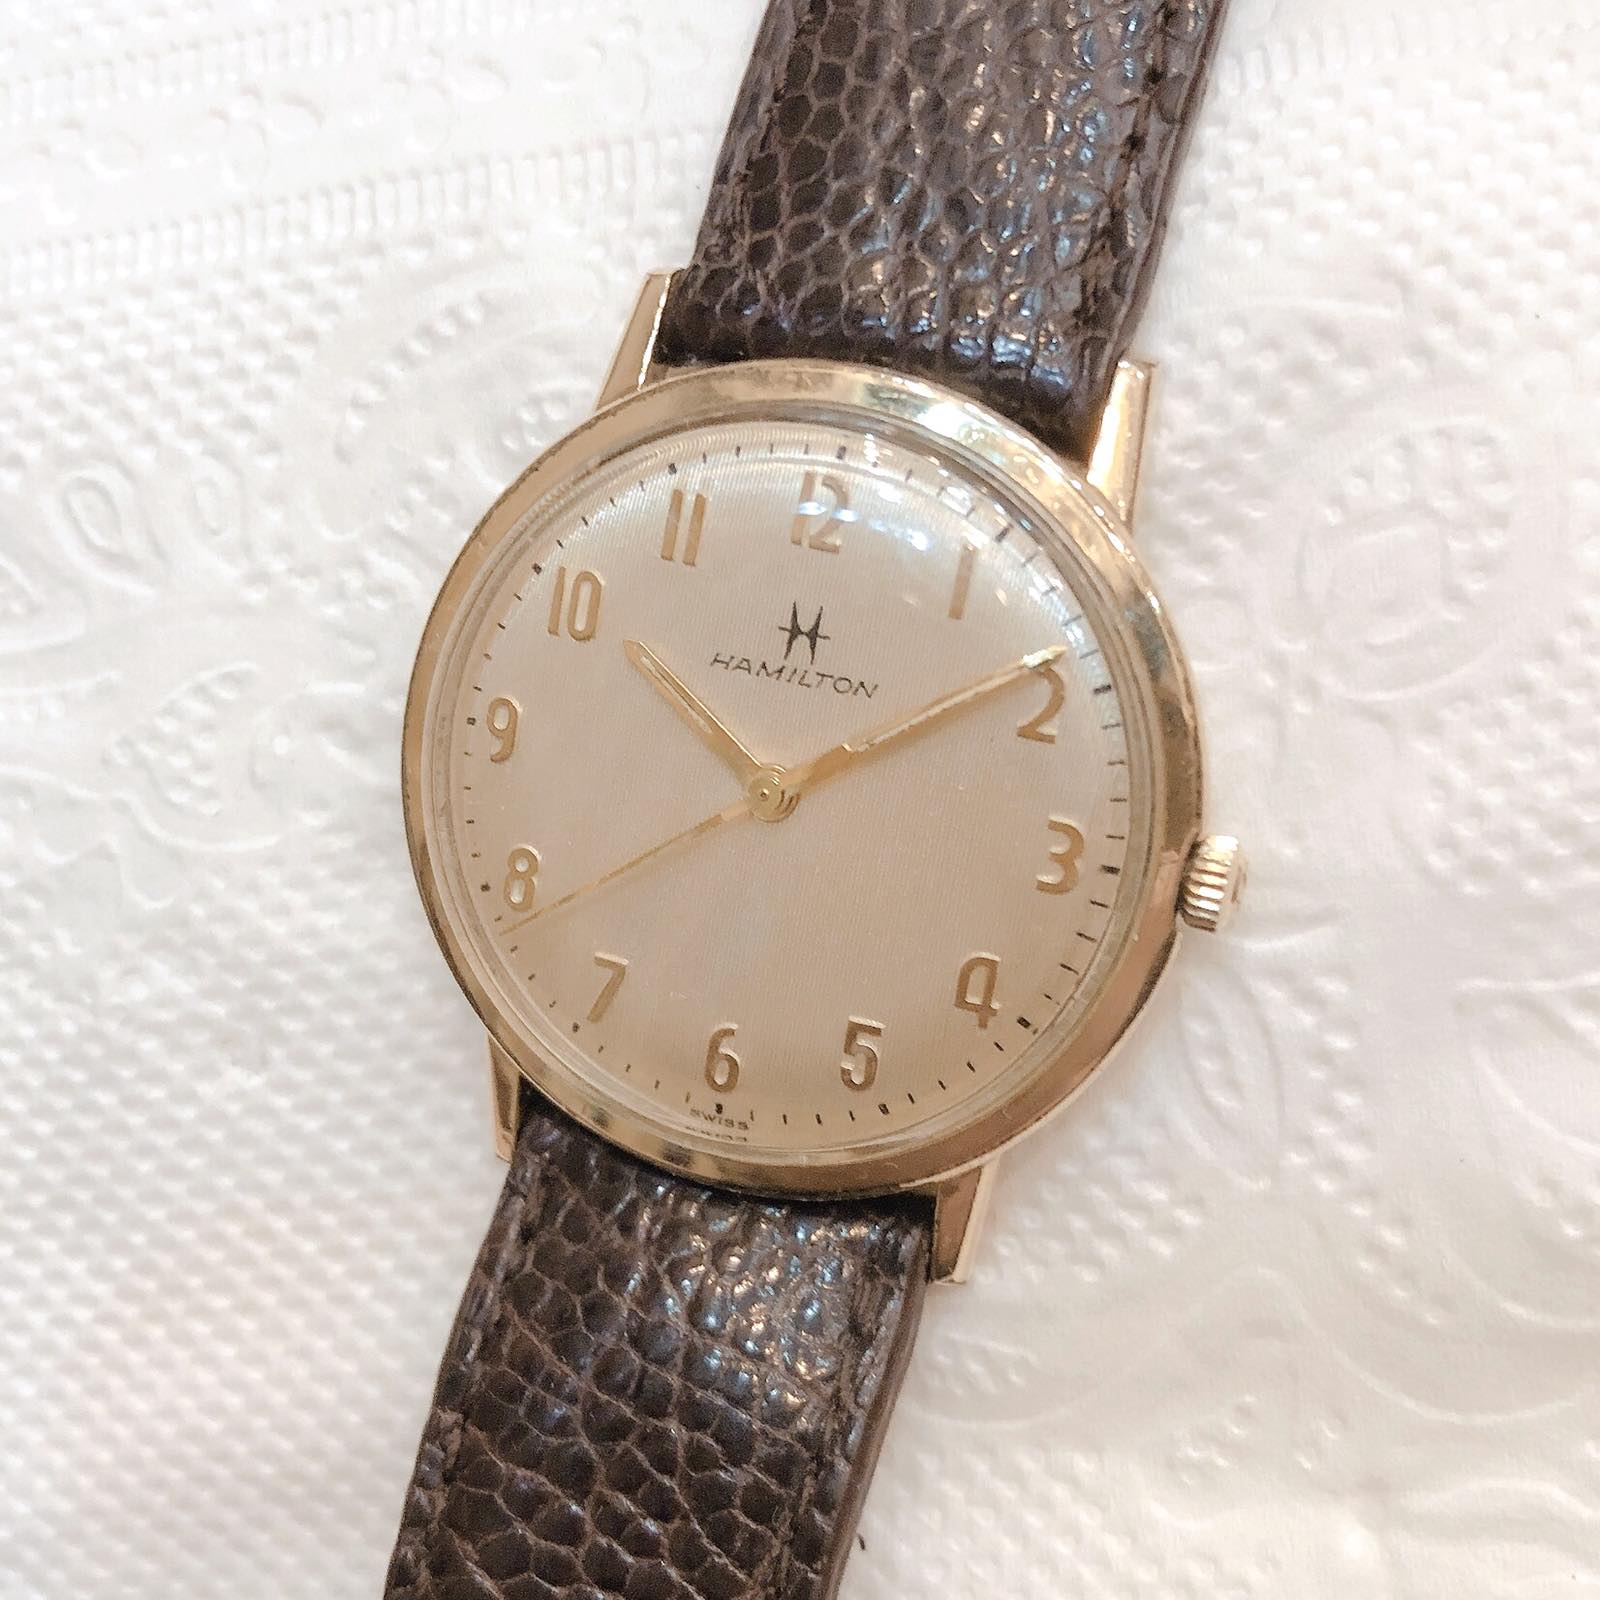 Đồng hồ cổ Hamilton lên dây thuỵ sỹ bọc vàng 10k RGP chính hãng Thụy Sỹ